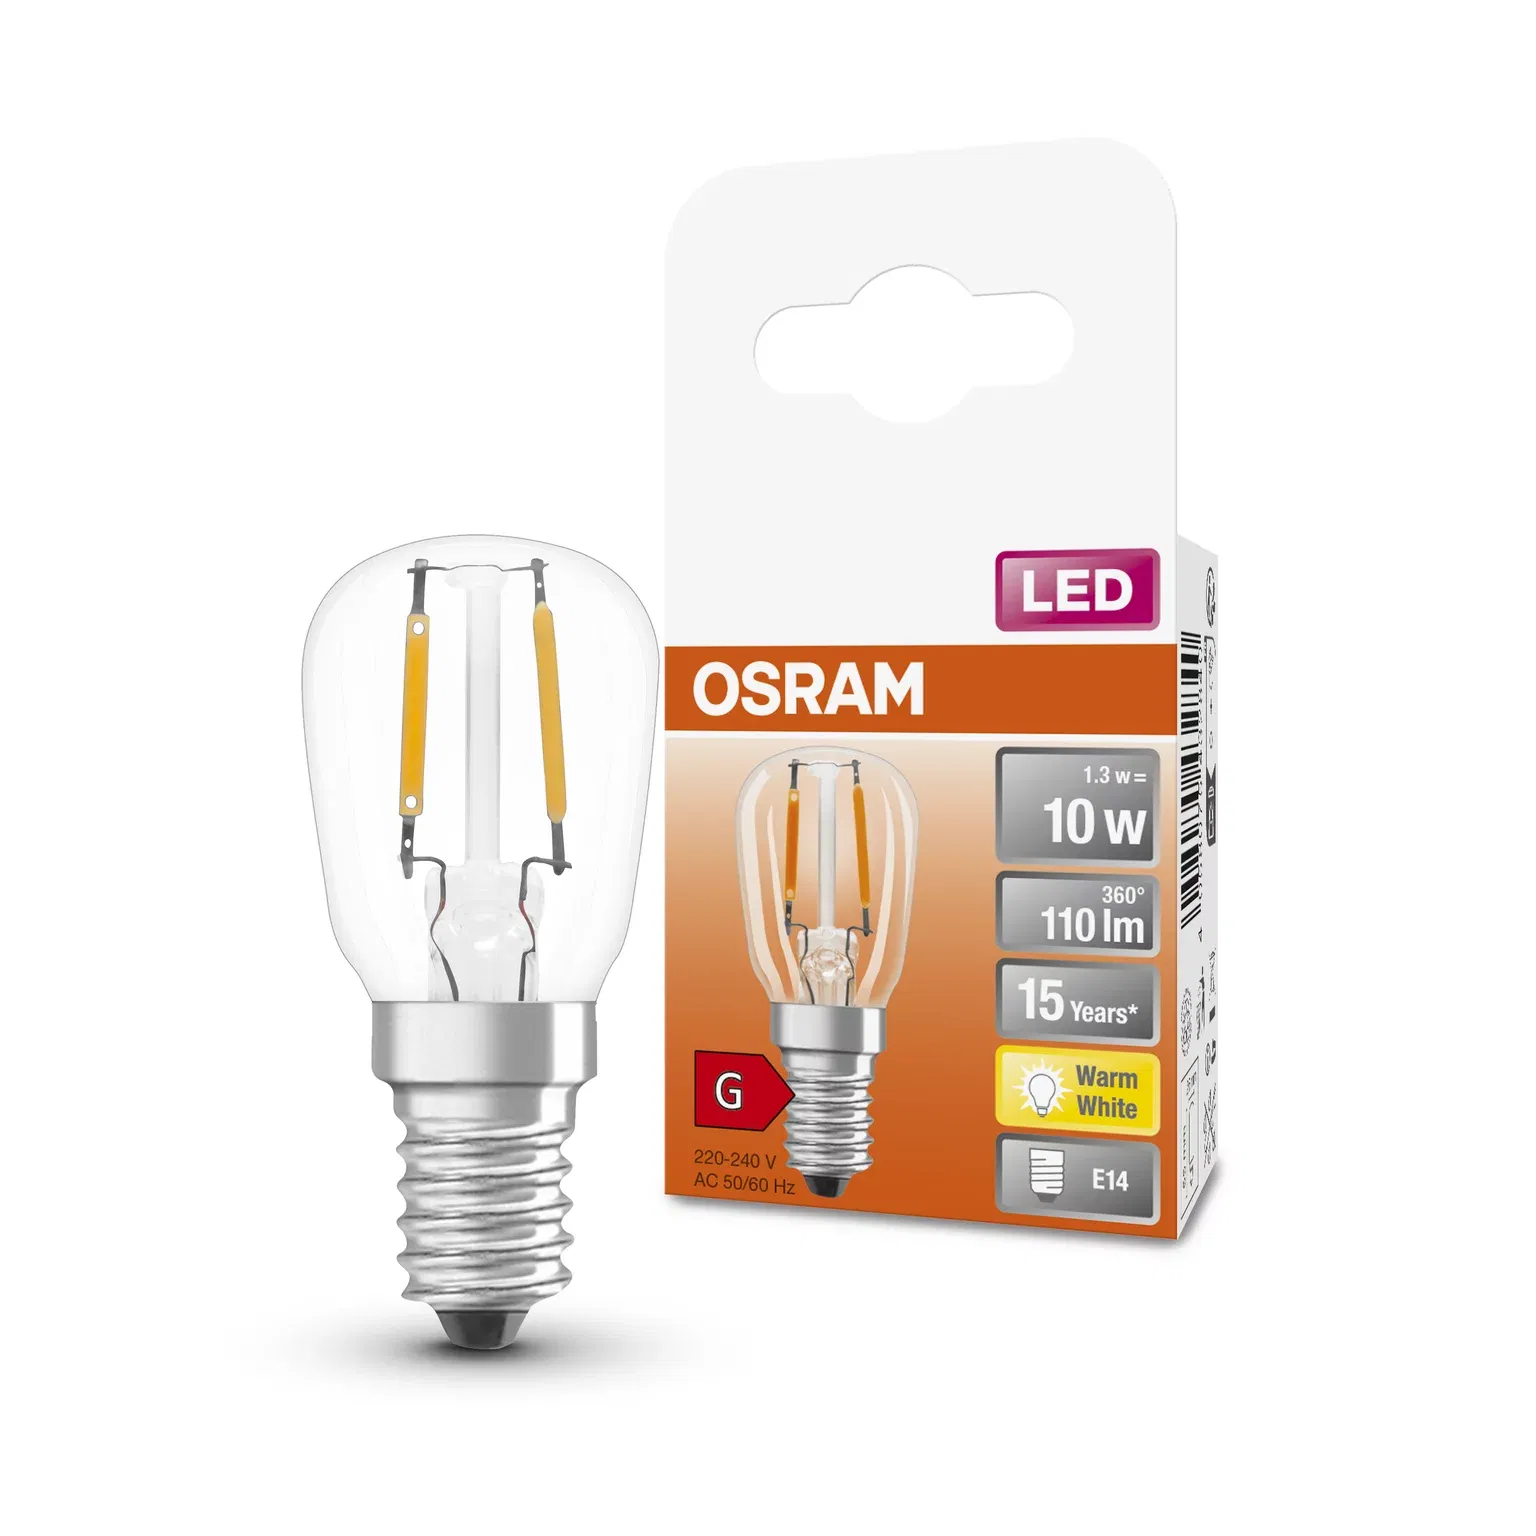 LED lemputė OSRAM Special T26 12, šaldytuvui, E14, 2,2W, 2700 K, 110 lm, šiltai baltos sp.-2